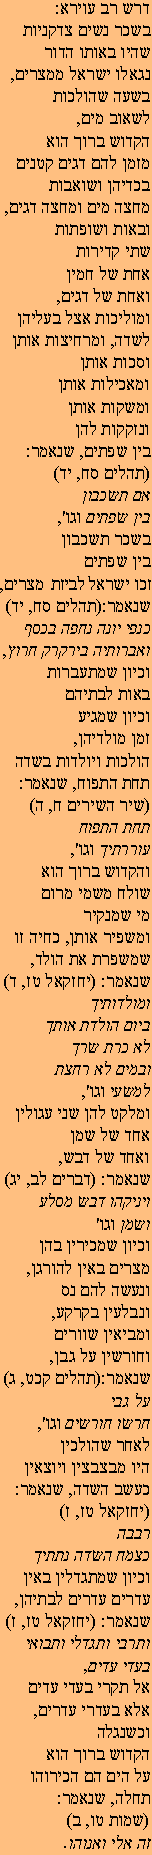 Ghemara 11 - 4